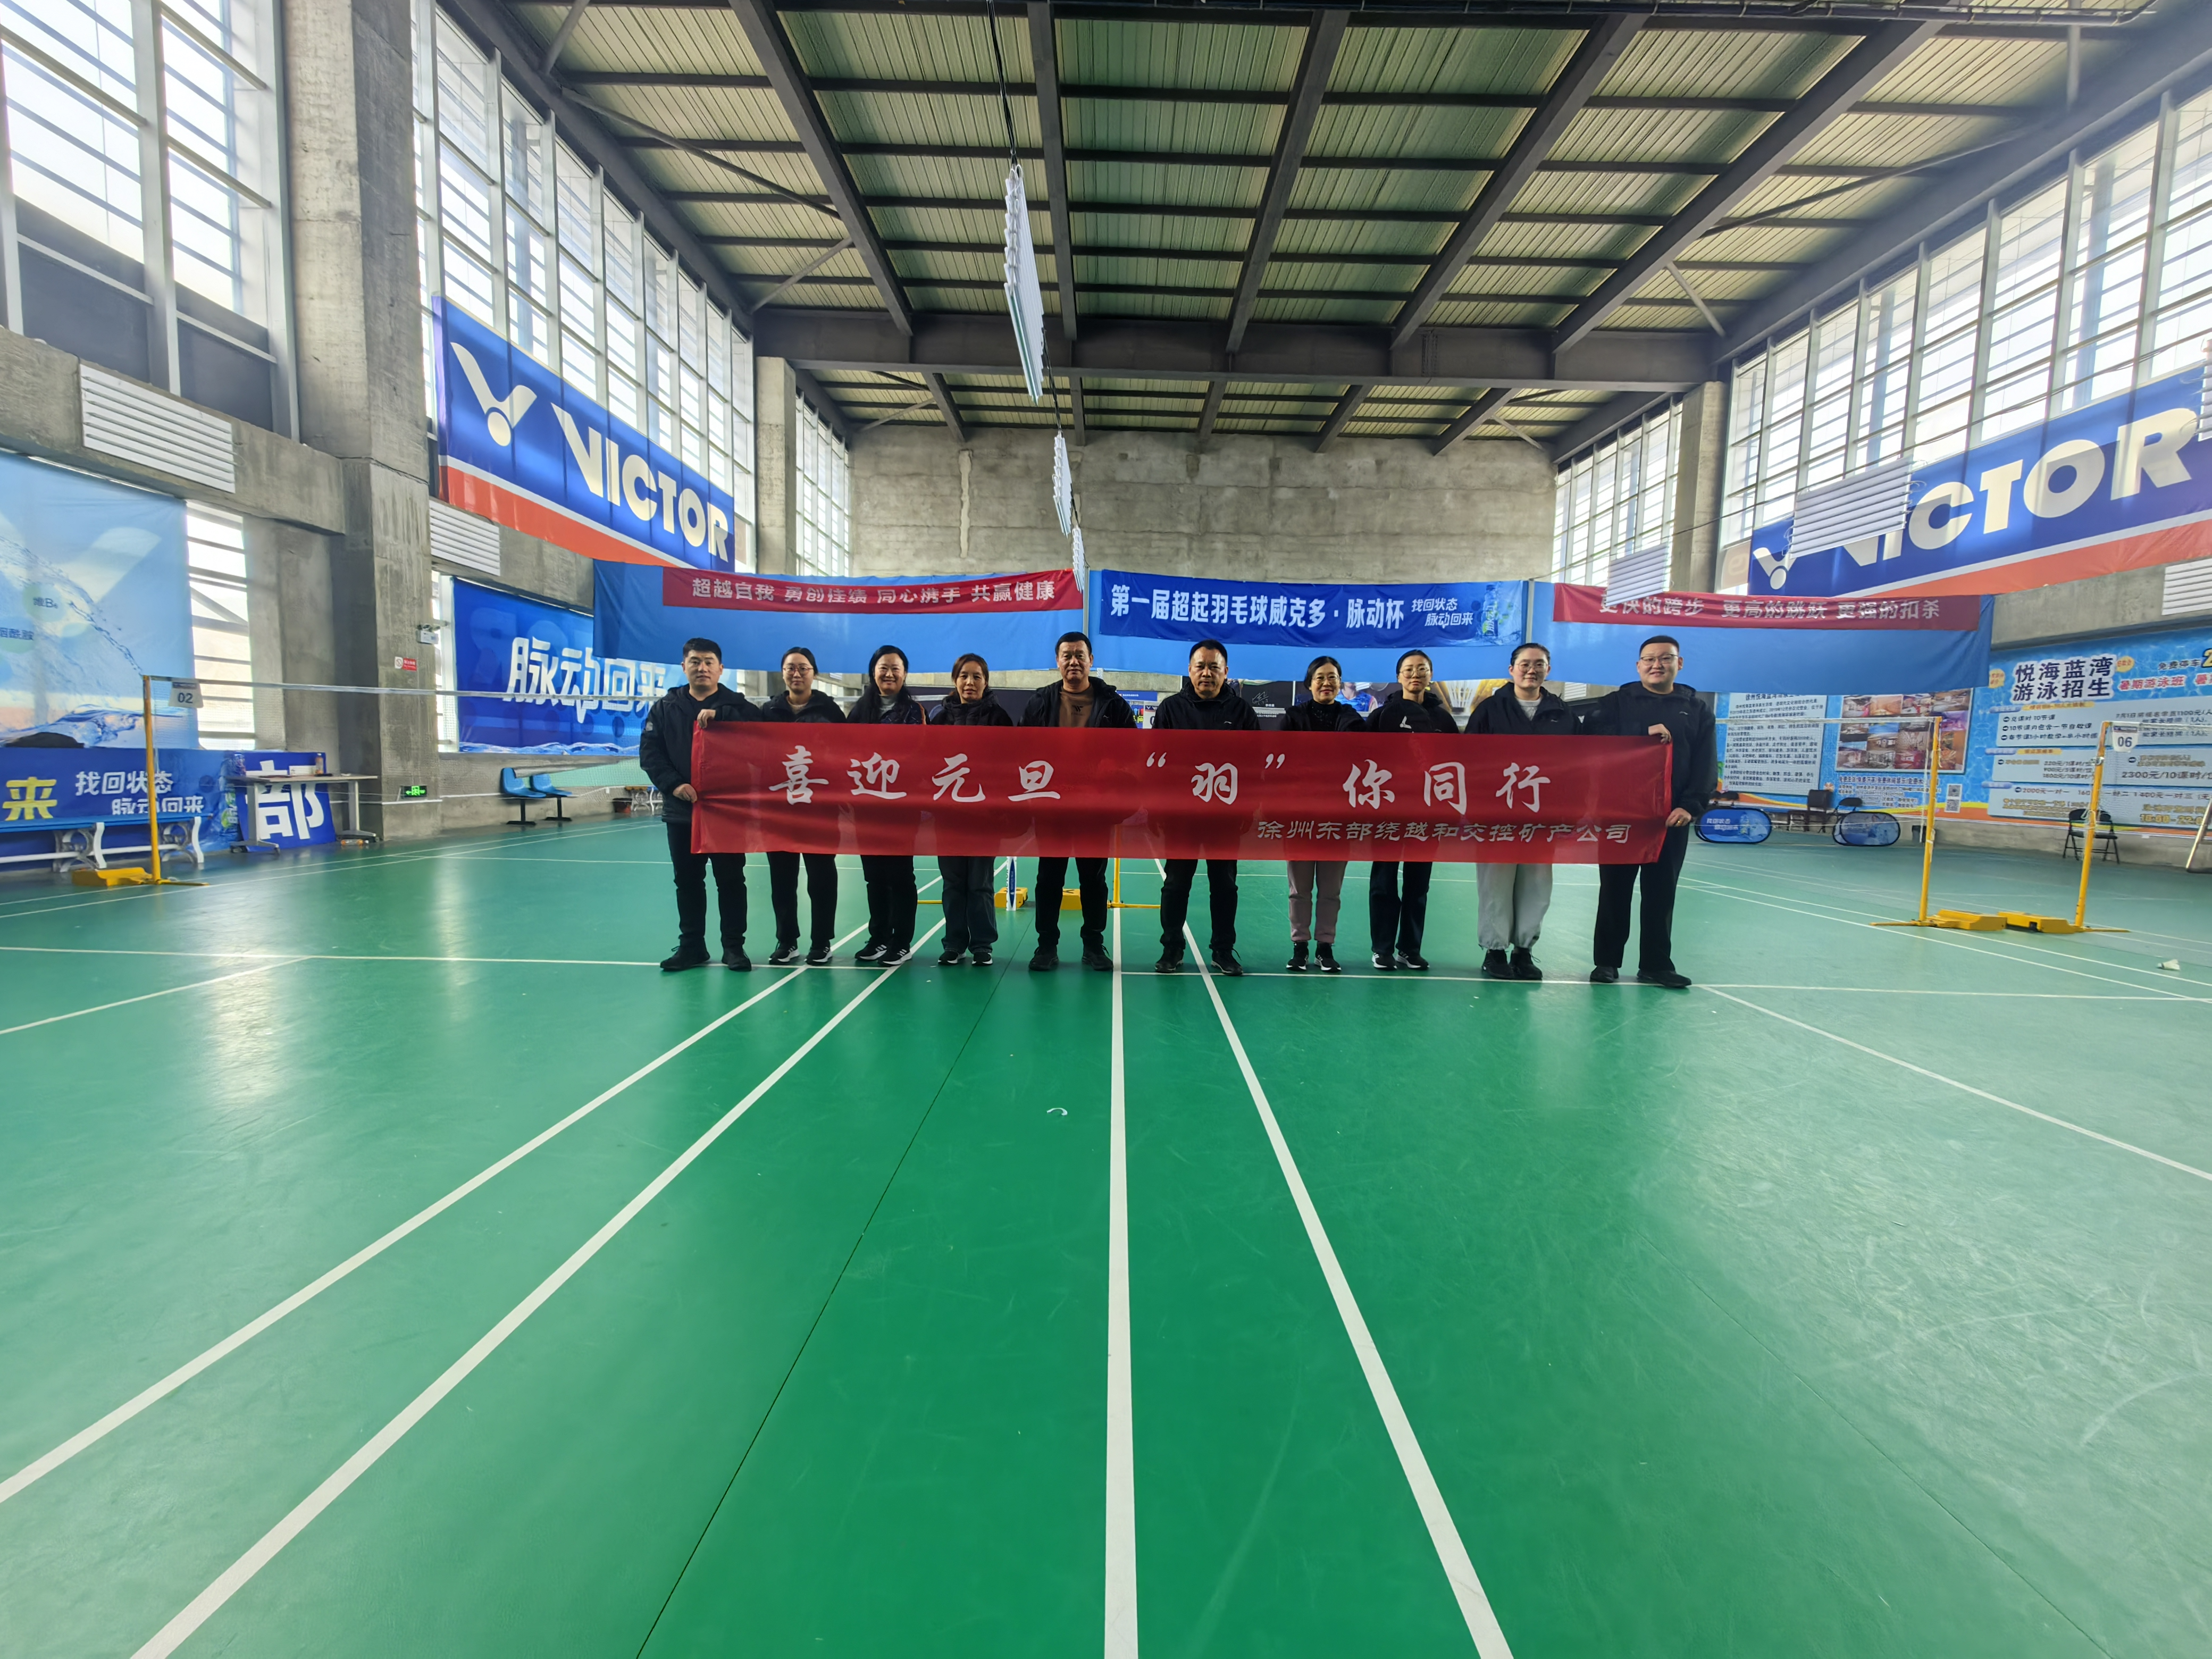 徐州东部绕越和交控矿产公司工会组织开展职工羽毛球竞赛活动